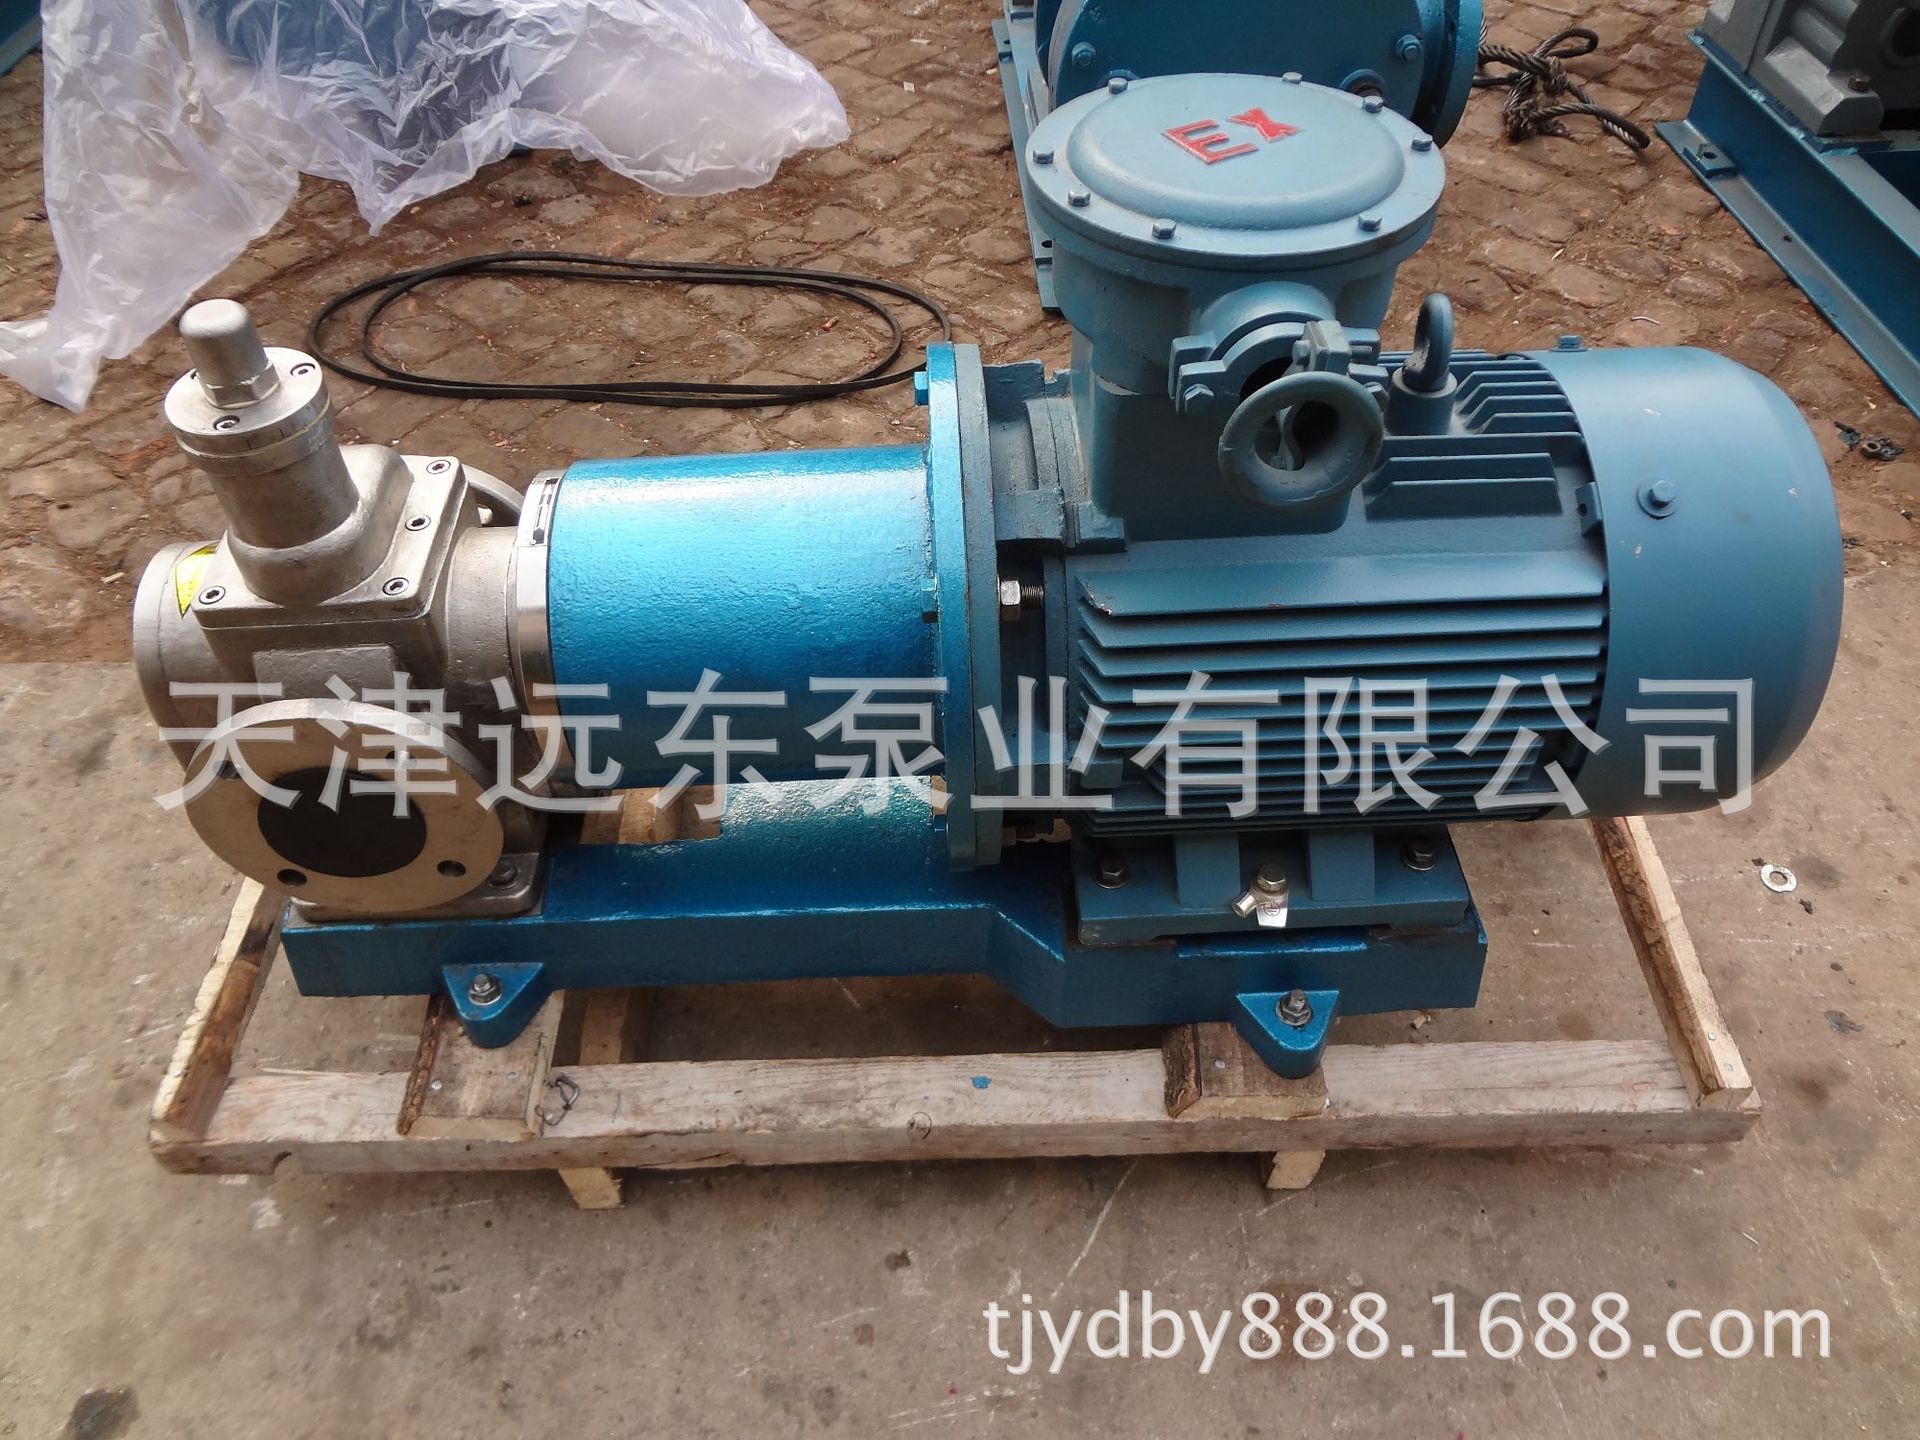 天津远东 YCB20/0.6不锈钢磁力圆弧齿轮泵 磁力齿轮泵 耐腐蚀泵示例图3